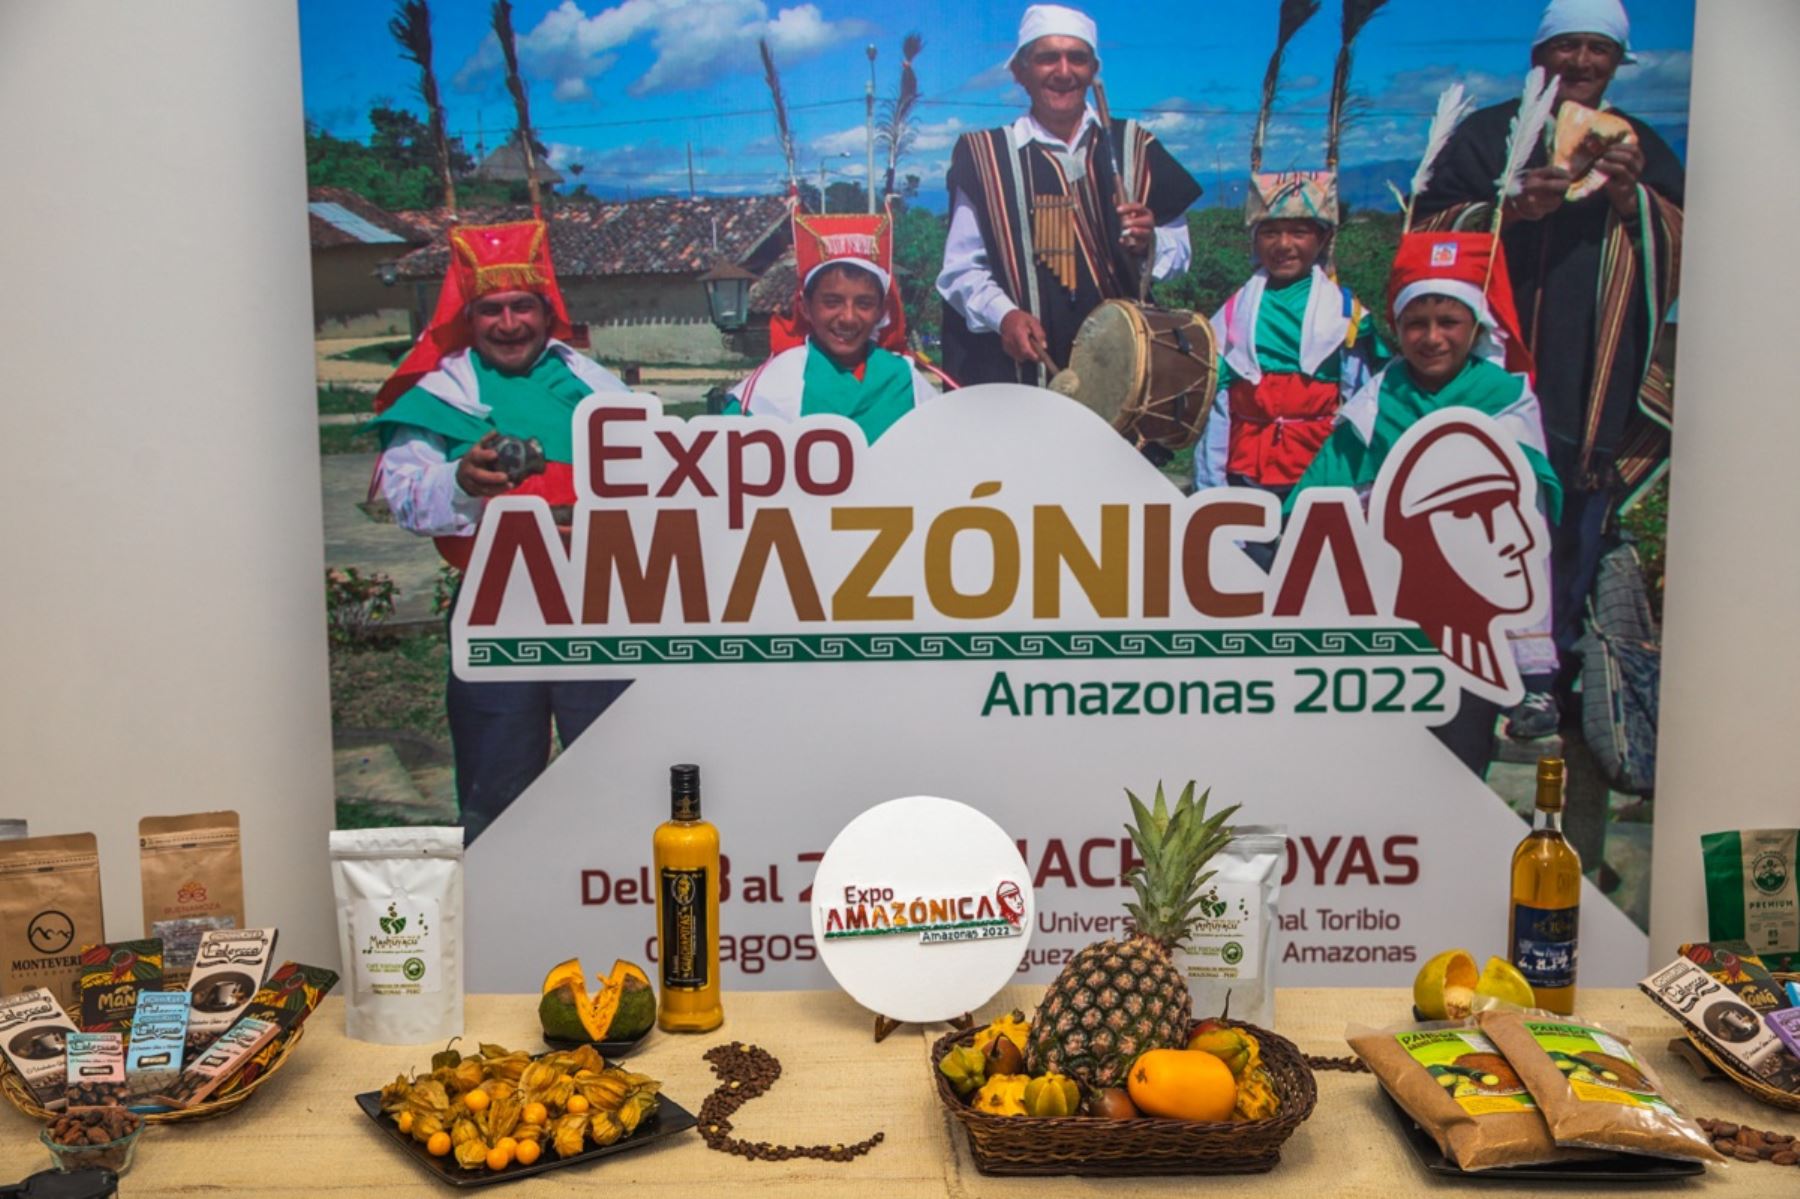 Parte de la oferta de productos que se venderán en la Expoamazónica Amazonas 2022. Foto: Cortesía.